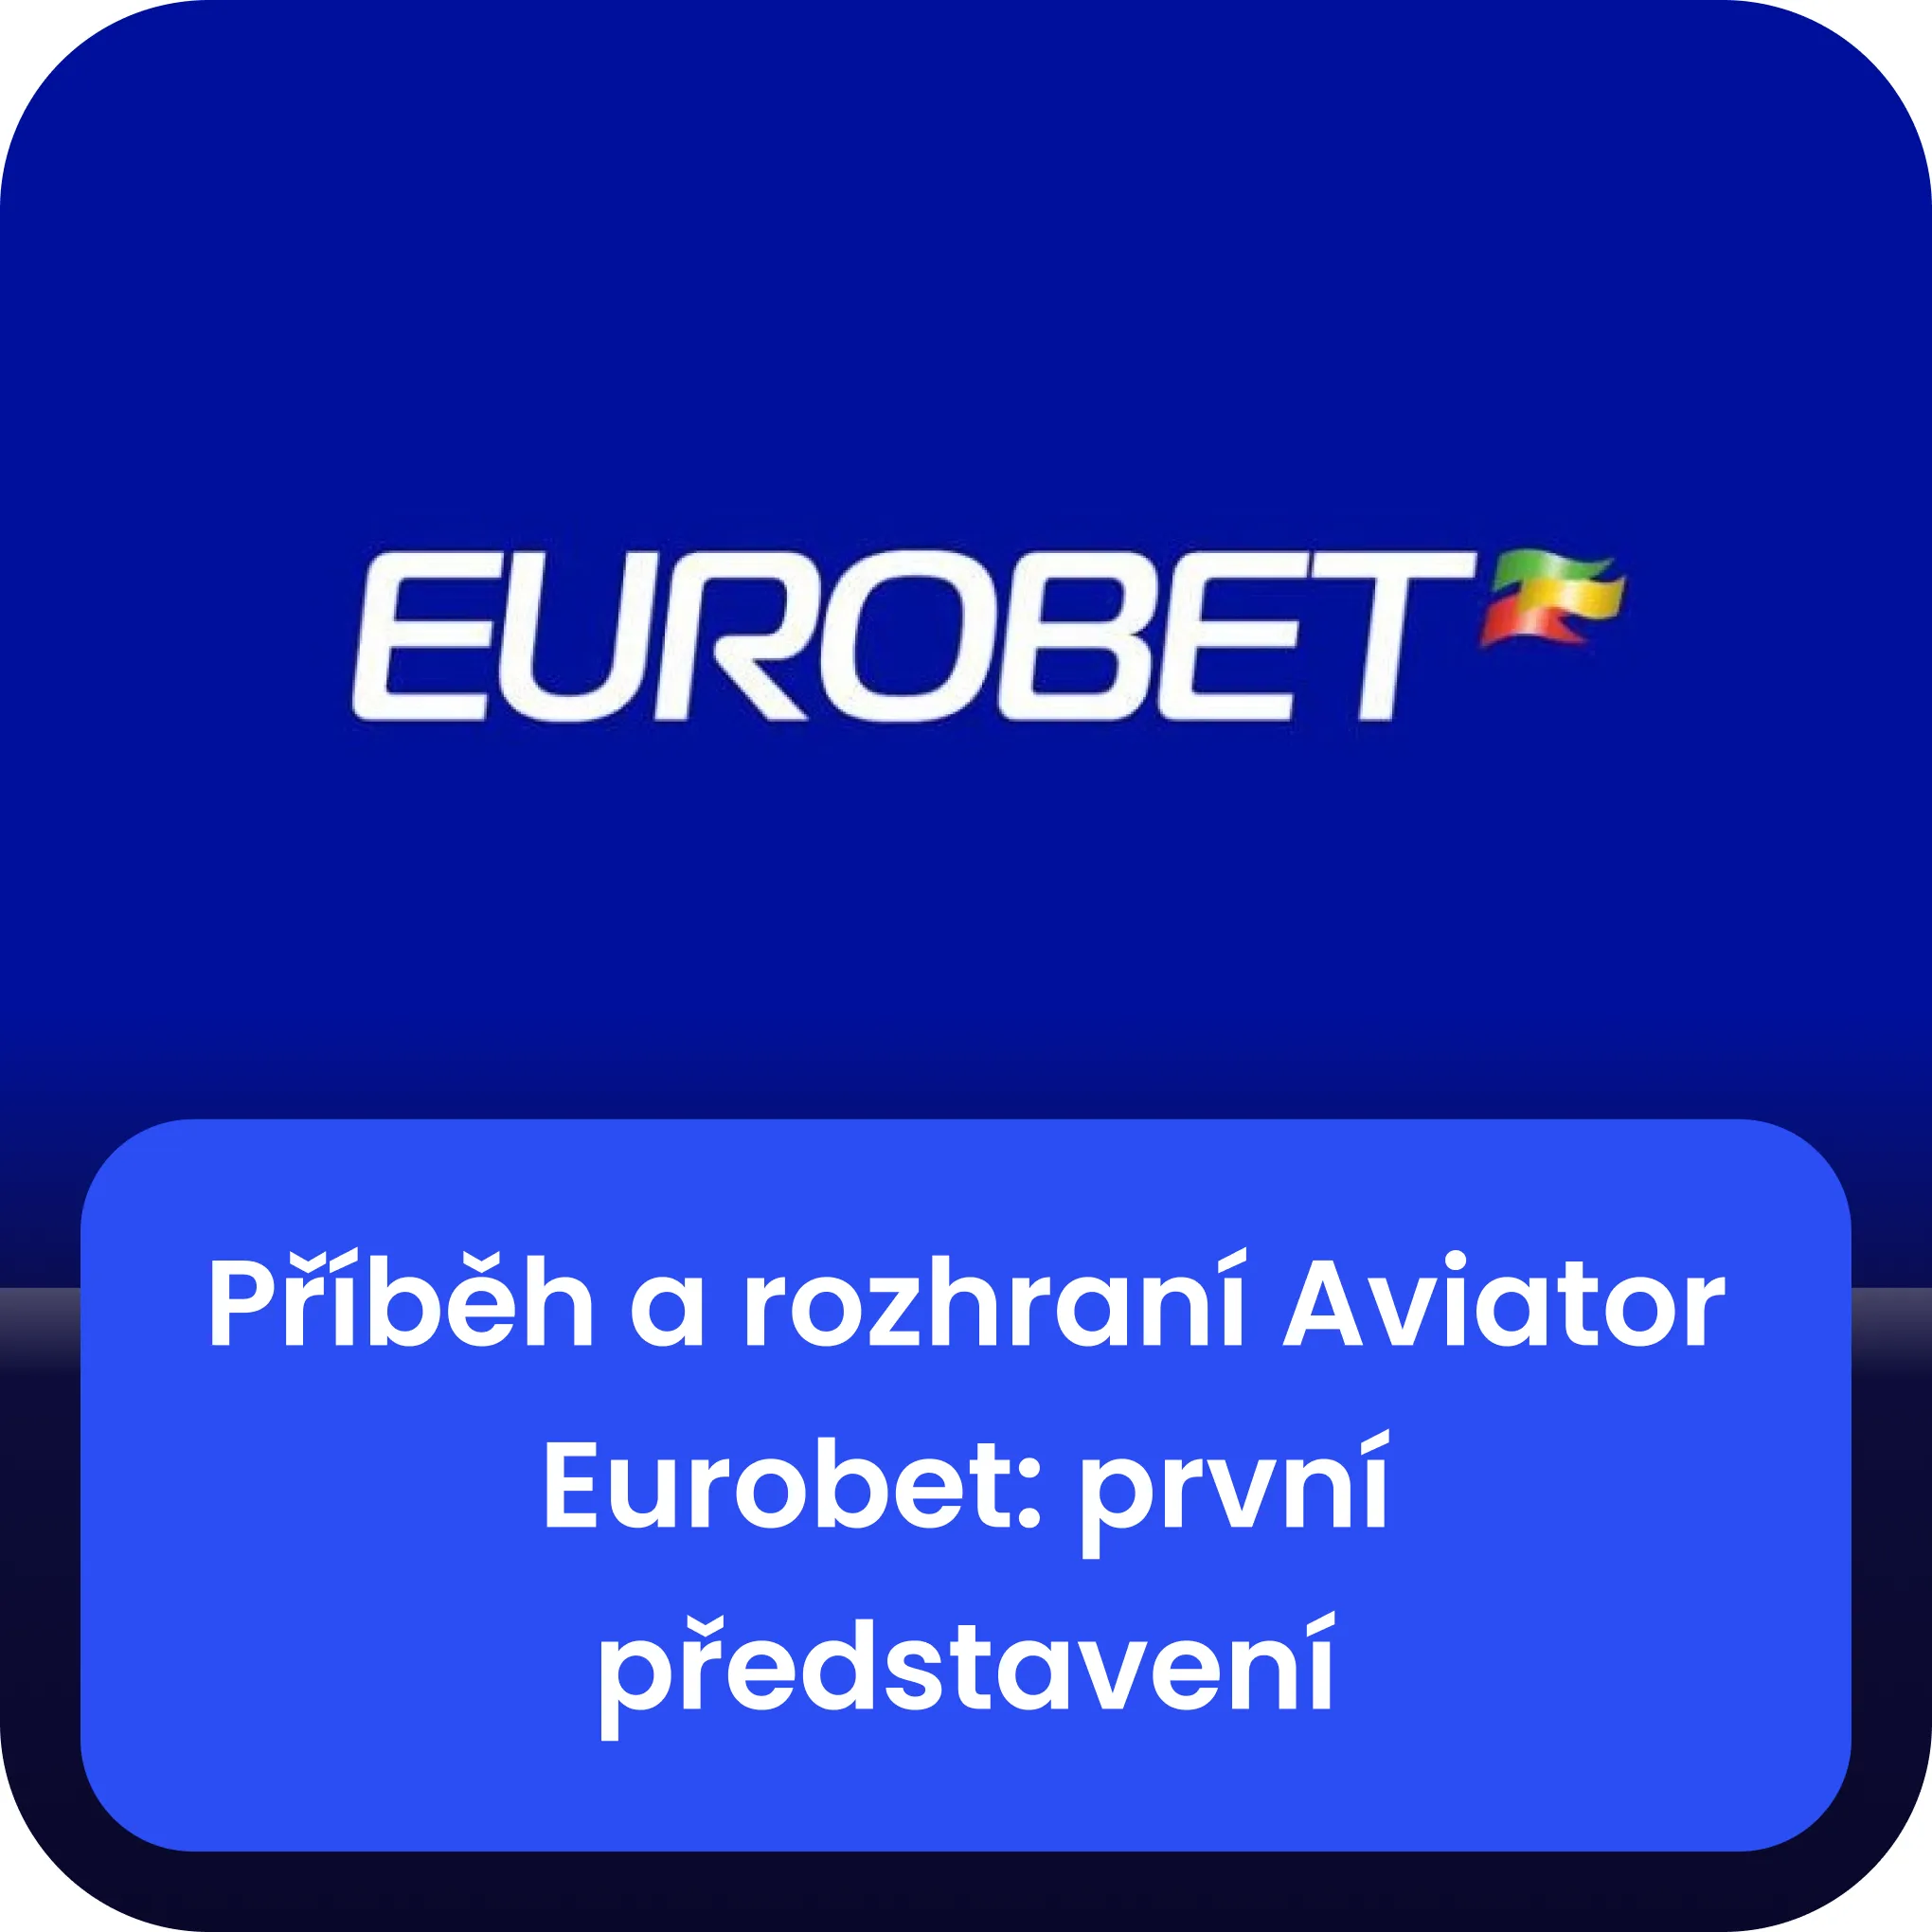 eurobet aviator příběhová linie